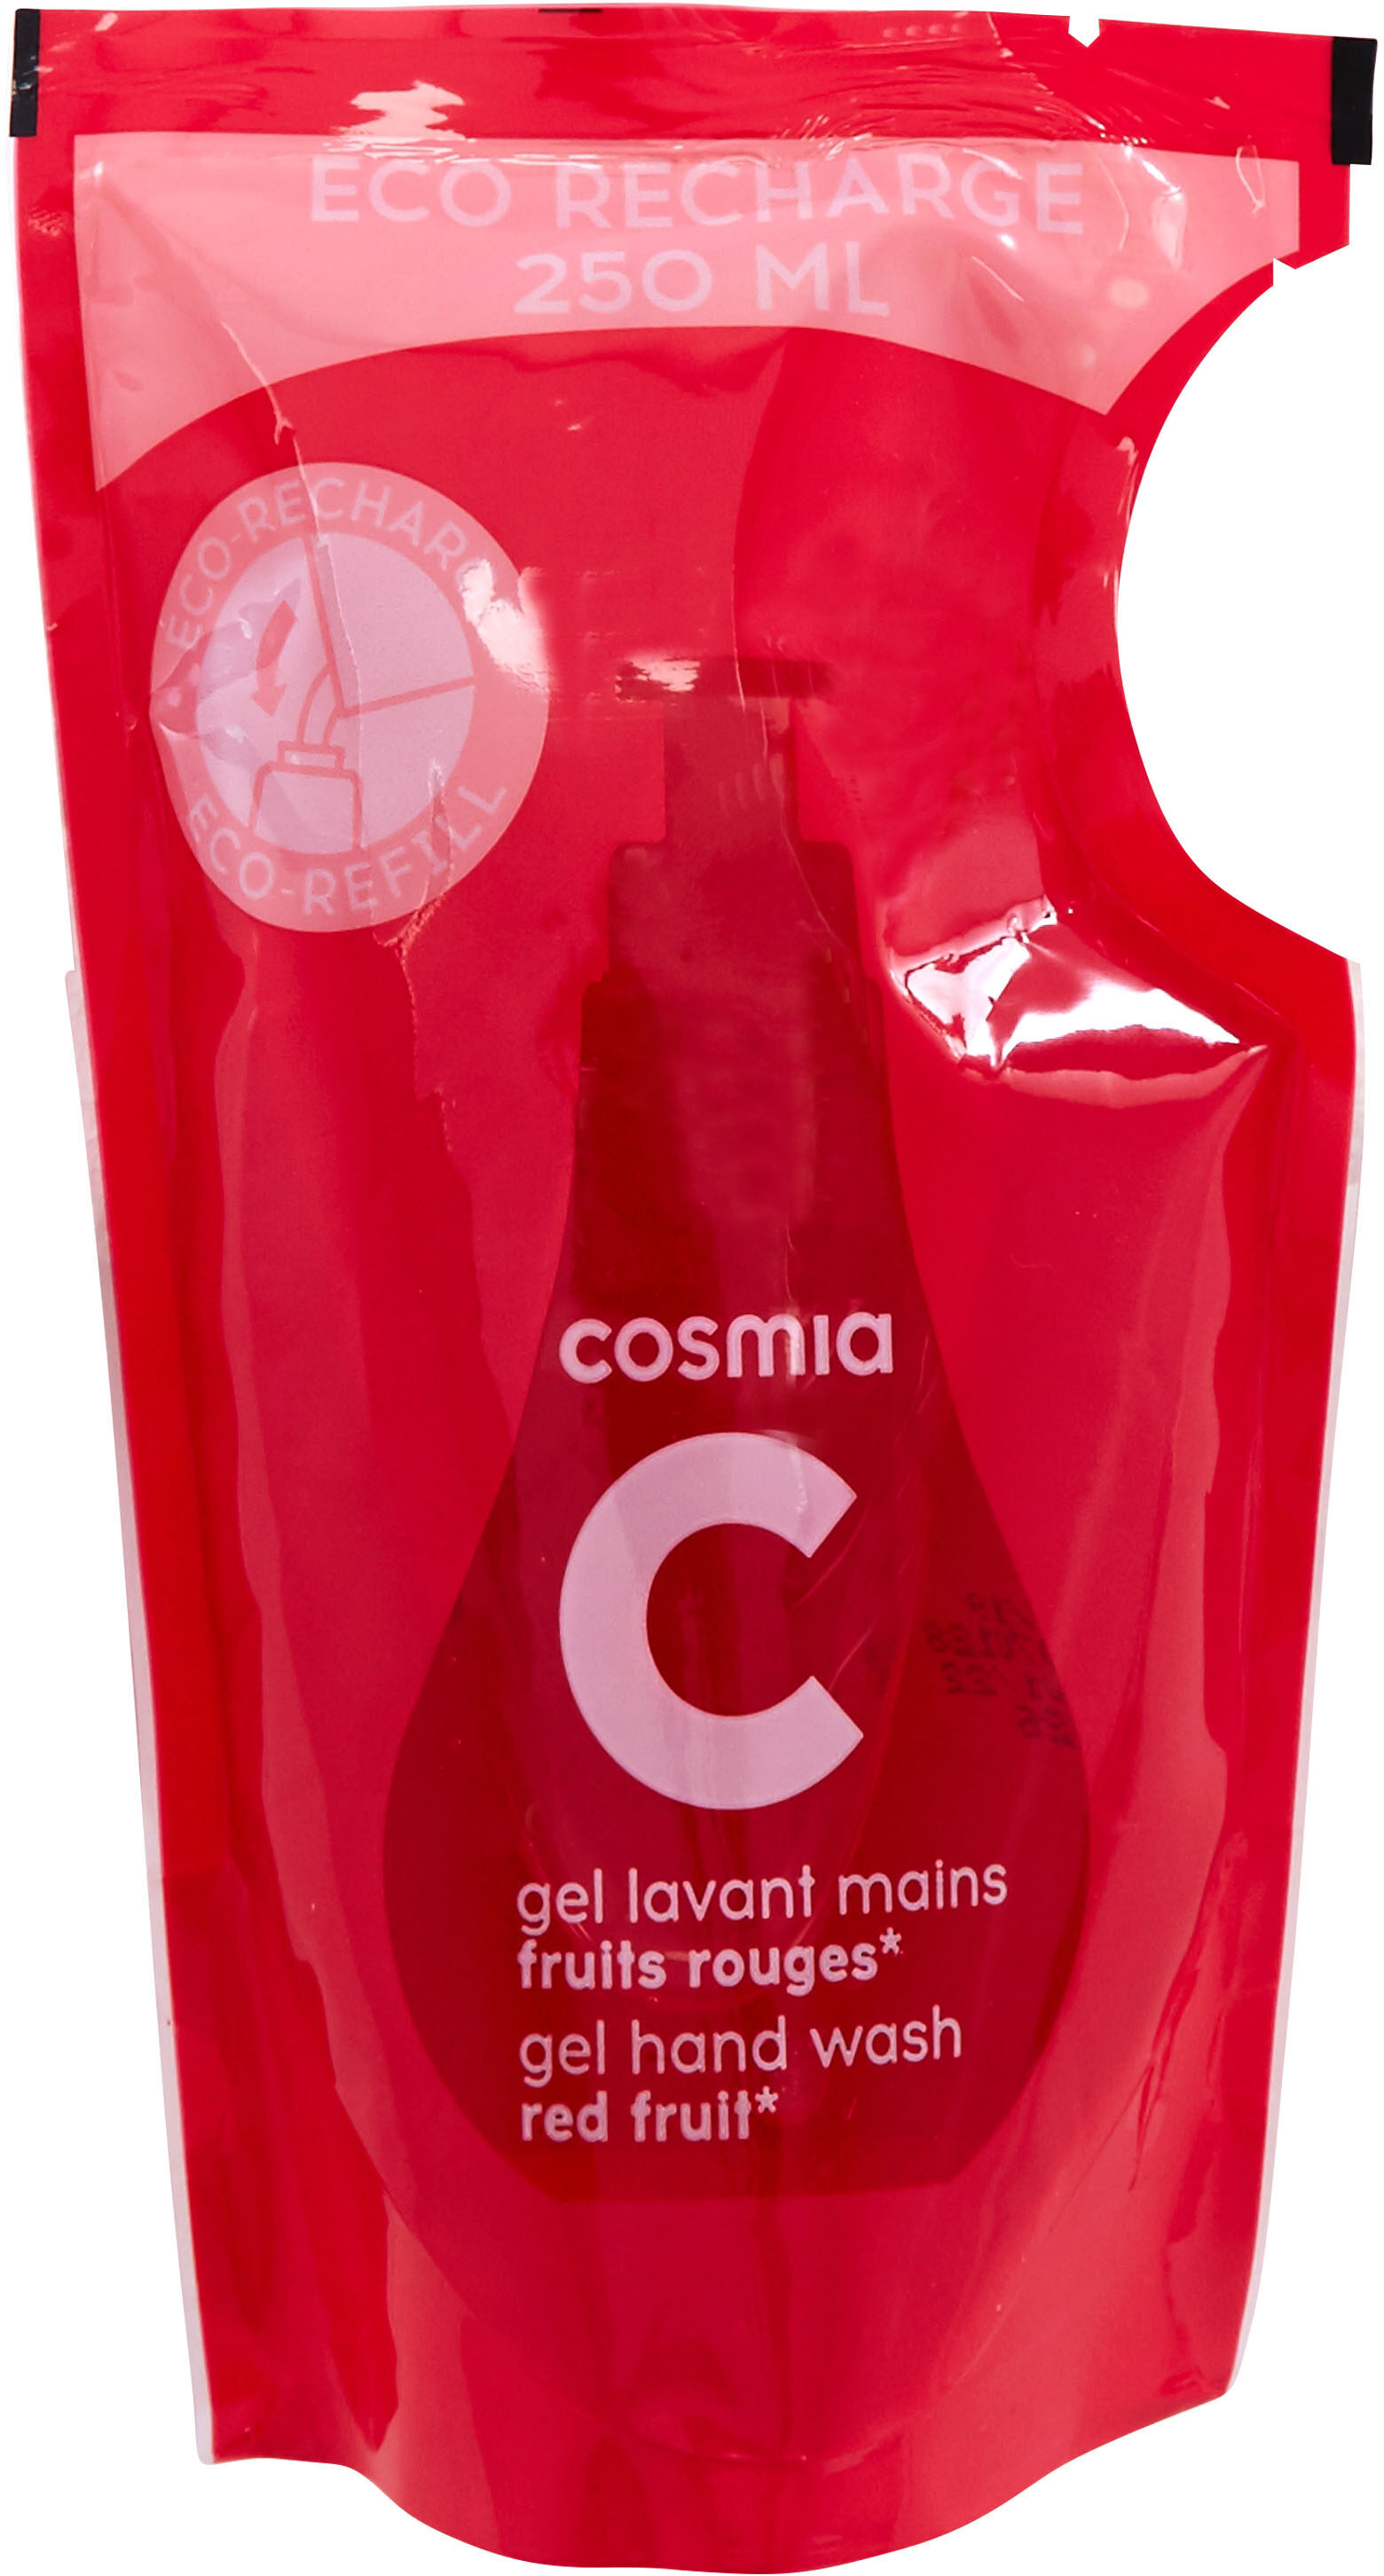 Cosmia - éco-recharge gel lavant mains - parfum fruits rouges* - tous types de peaux - 250ml - Продукт - fr